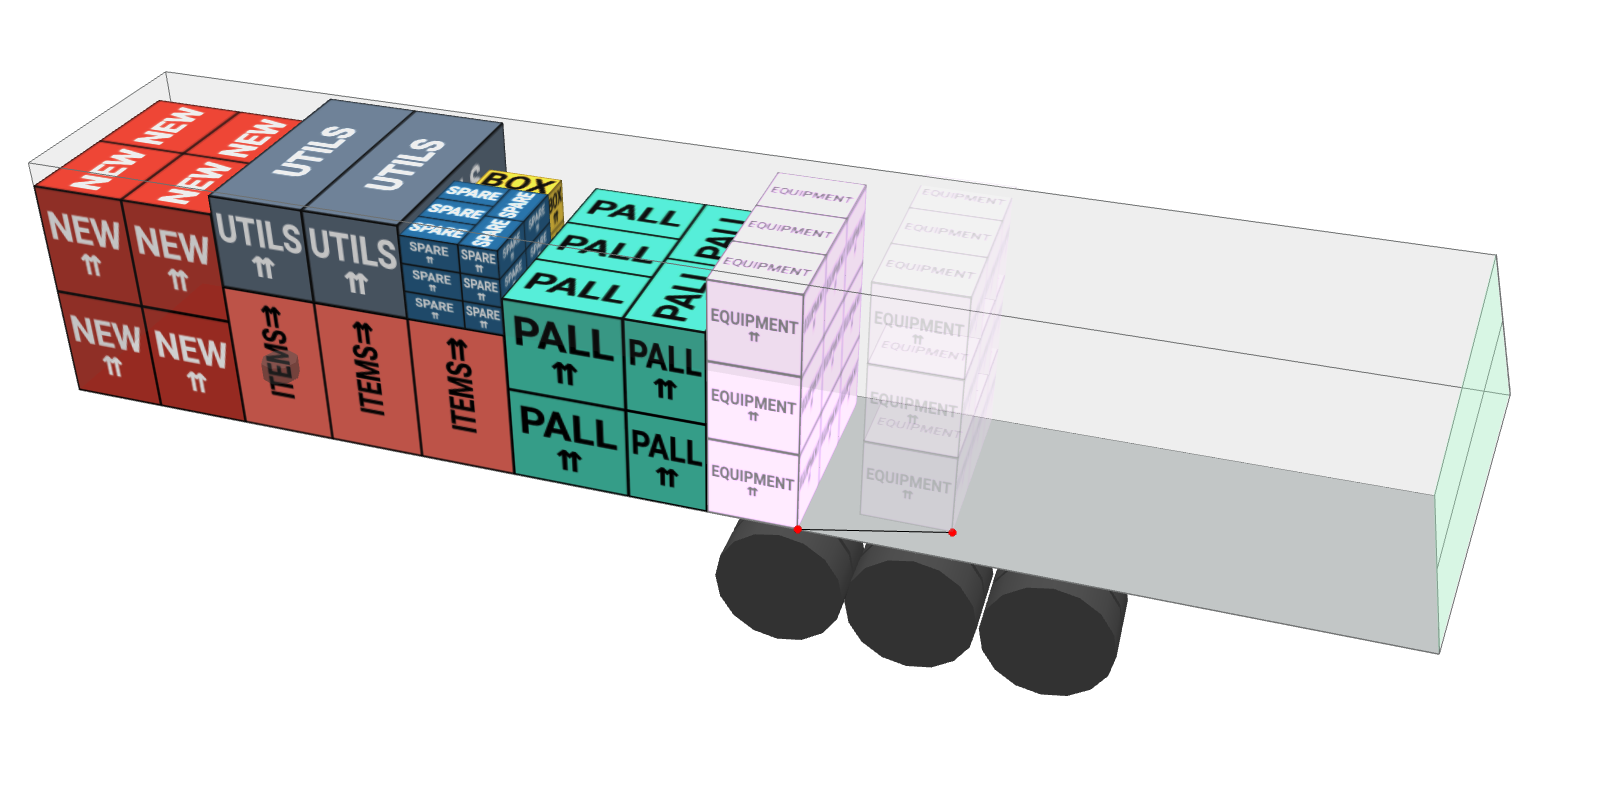 /_astro/modify cargo in trailer